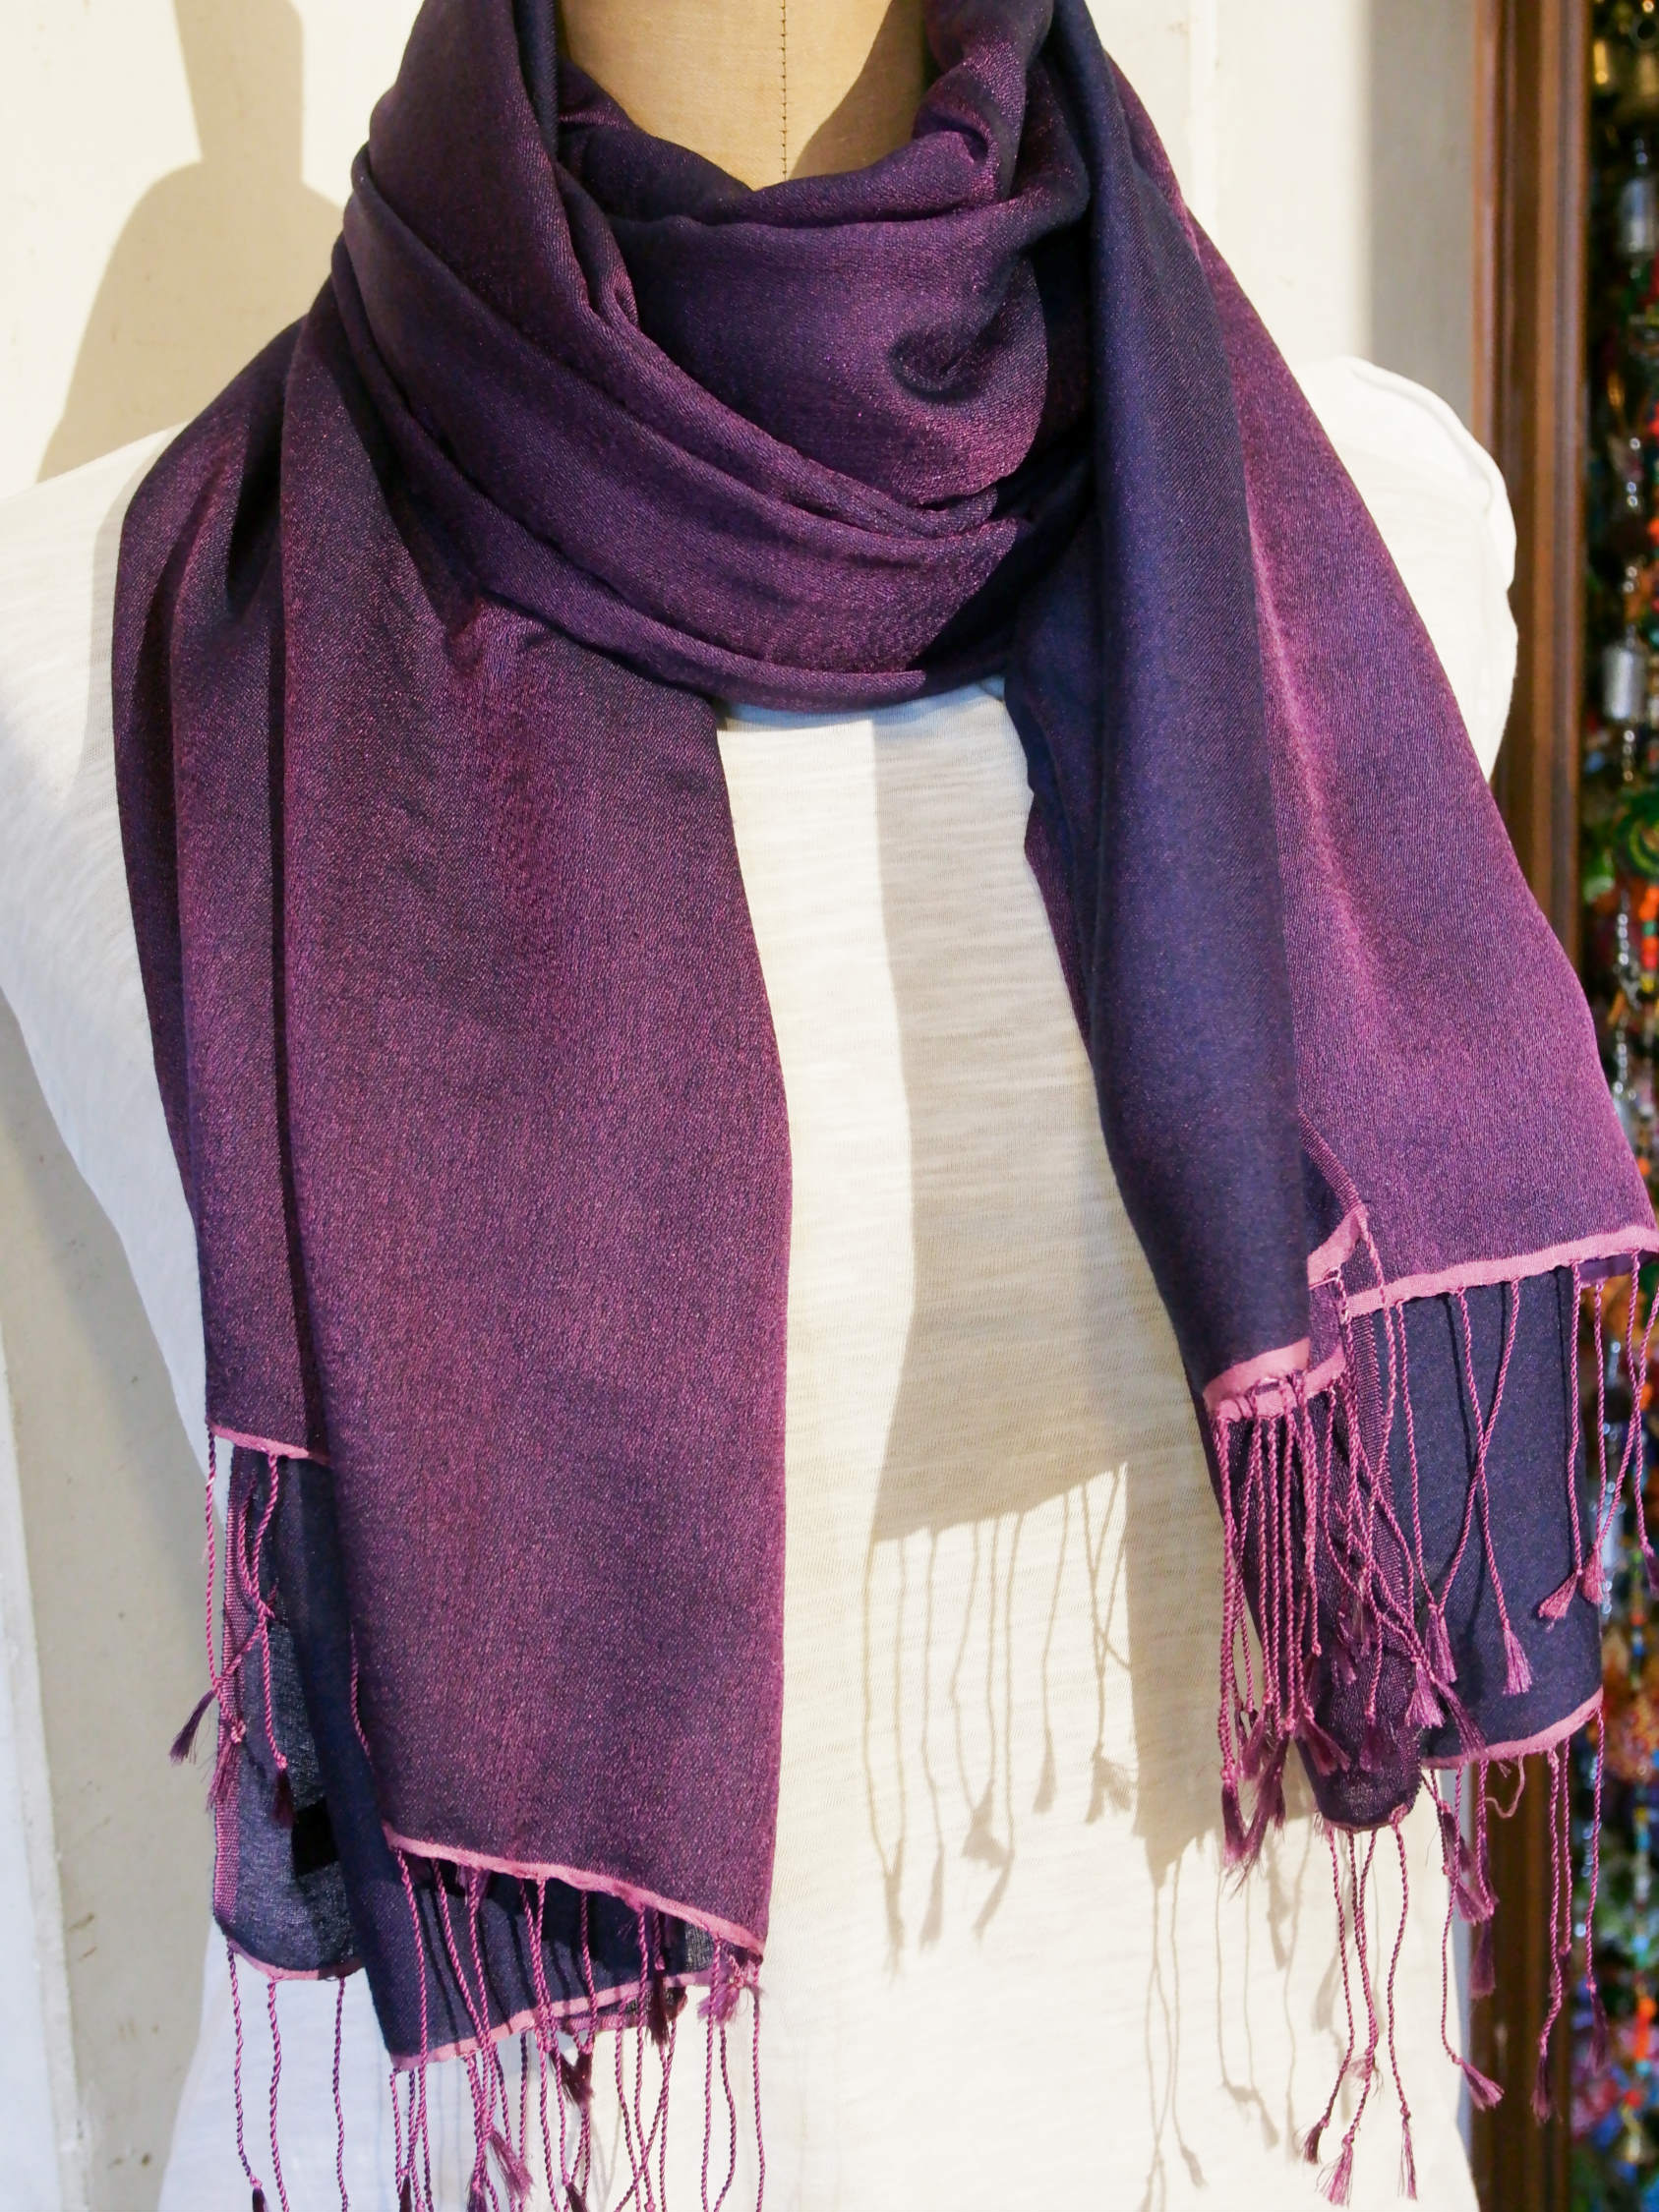 scialle in seta e lana di color viola chiaro e scuro.  pezzo unico.  peso 115 grammi, dimensioni 70x200cm.